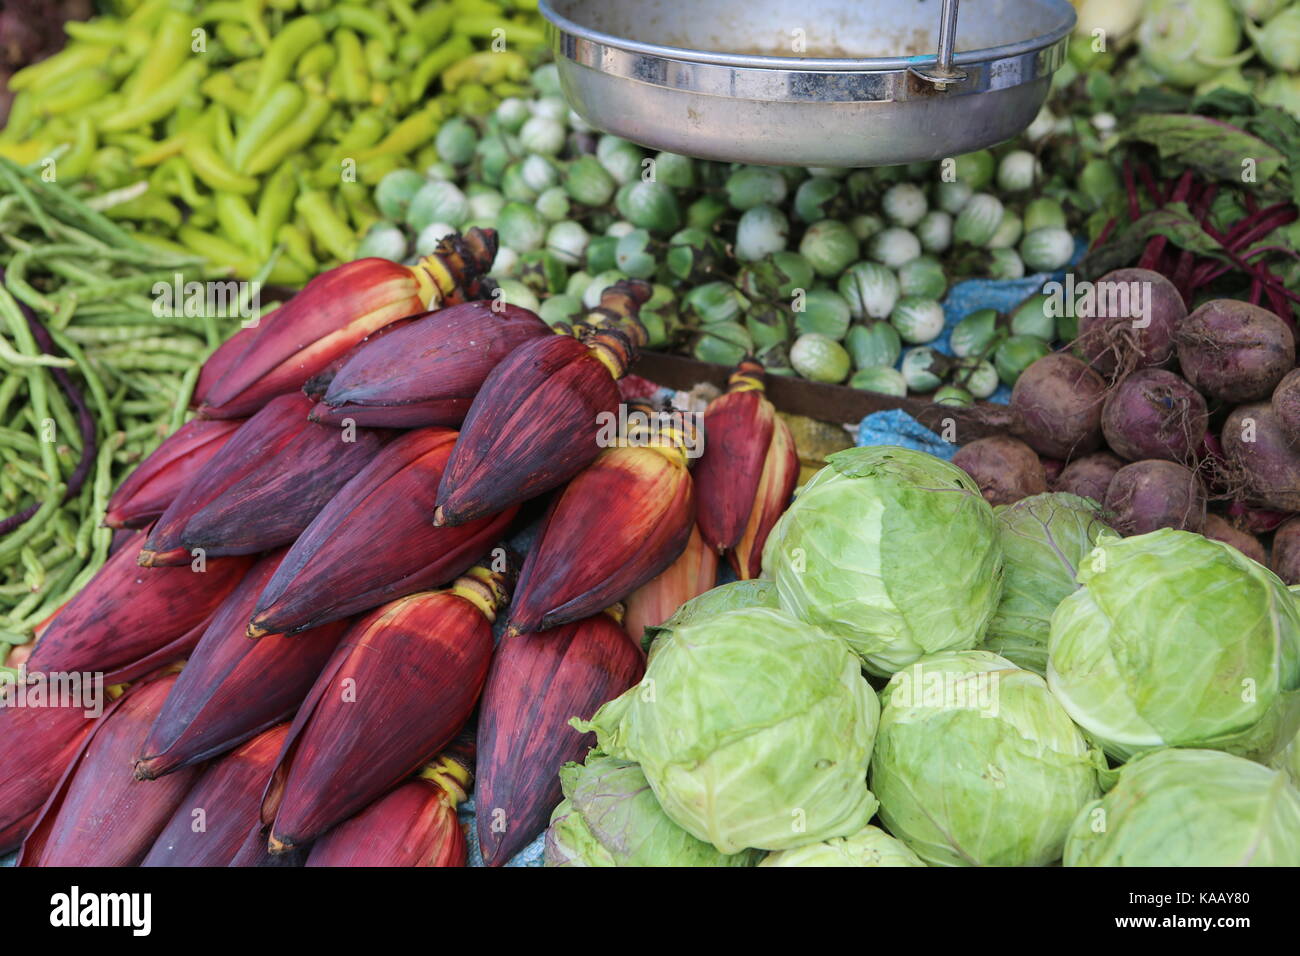 Légumes asiatiques sur un marché - Asiatisches Gemüse auf einem Markt Banque D'Images